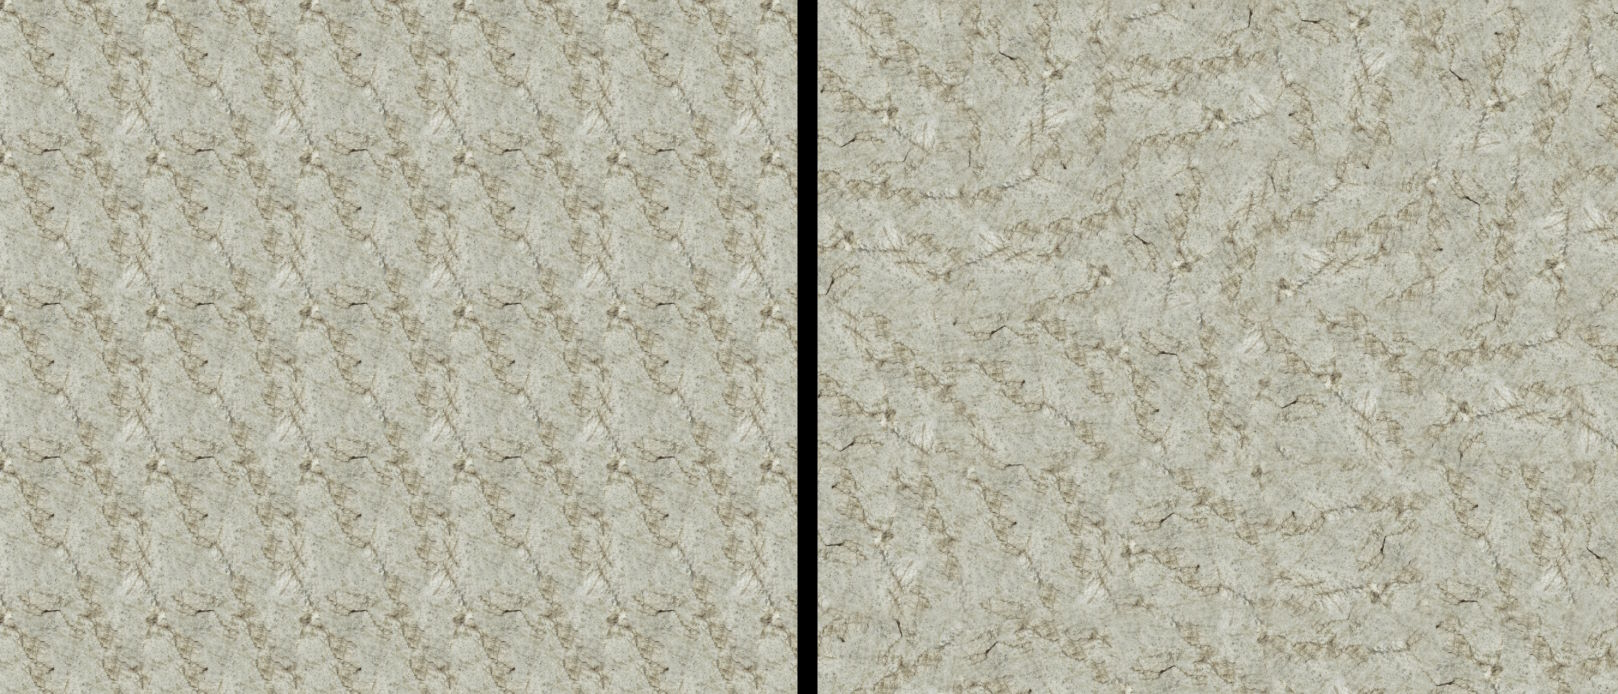 Left: standard tiling. Right: randomized tiling.